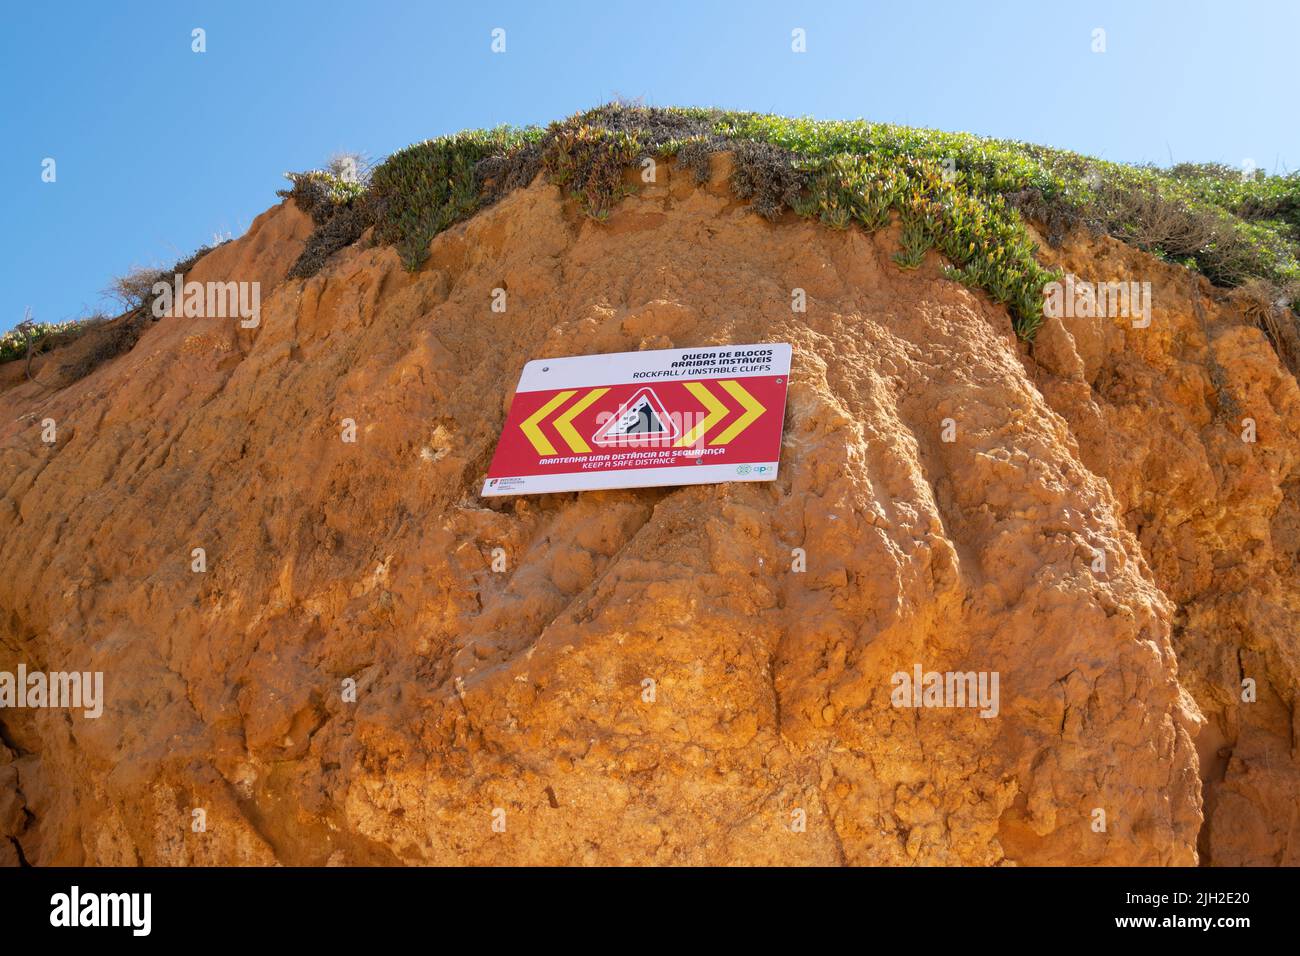 Acantilados rockfall signos en Algarve Portugal. Acantilados de playa, zona de rocas en las playas costeras. Zonas peligrosas en las playas bajo los acantilados. Zona de derrumbe del acantilado Foto de stock